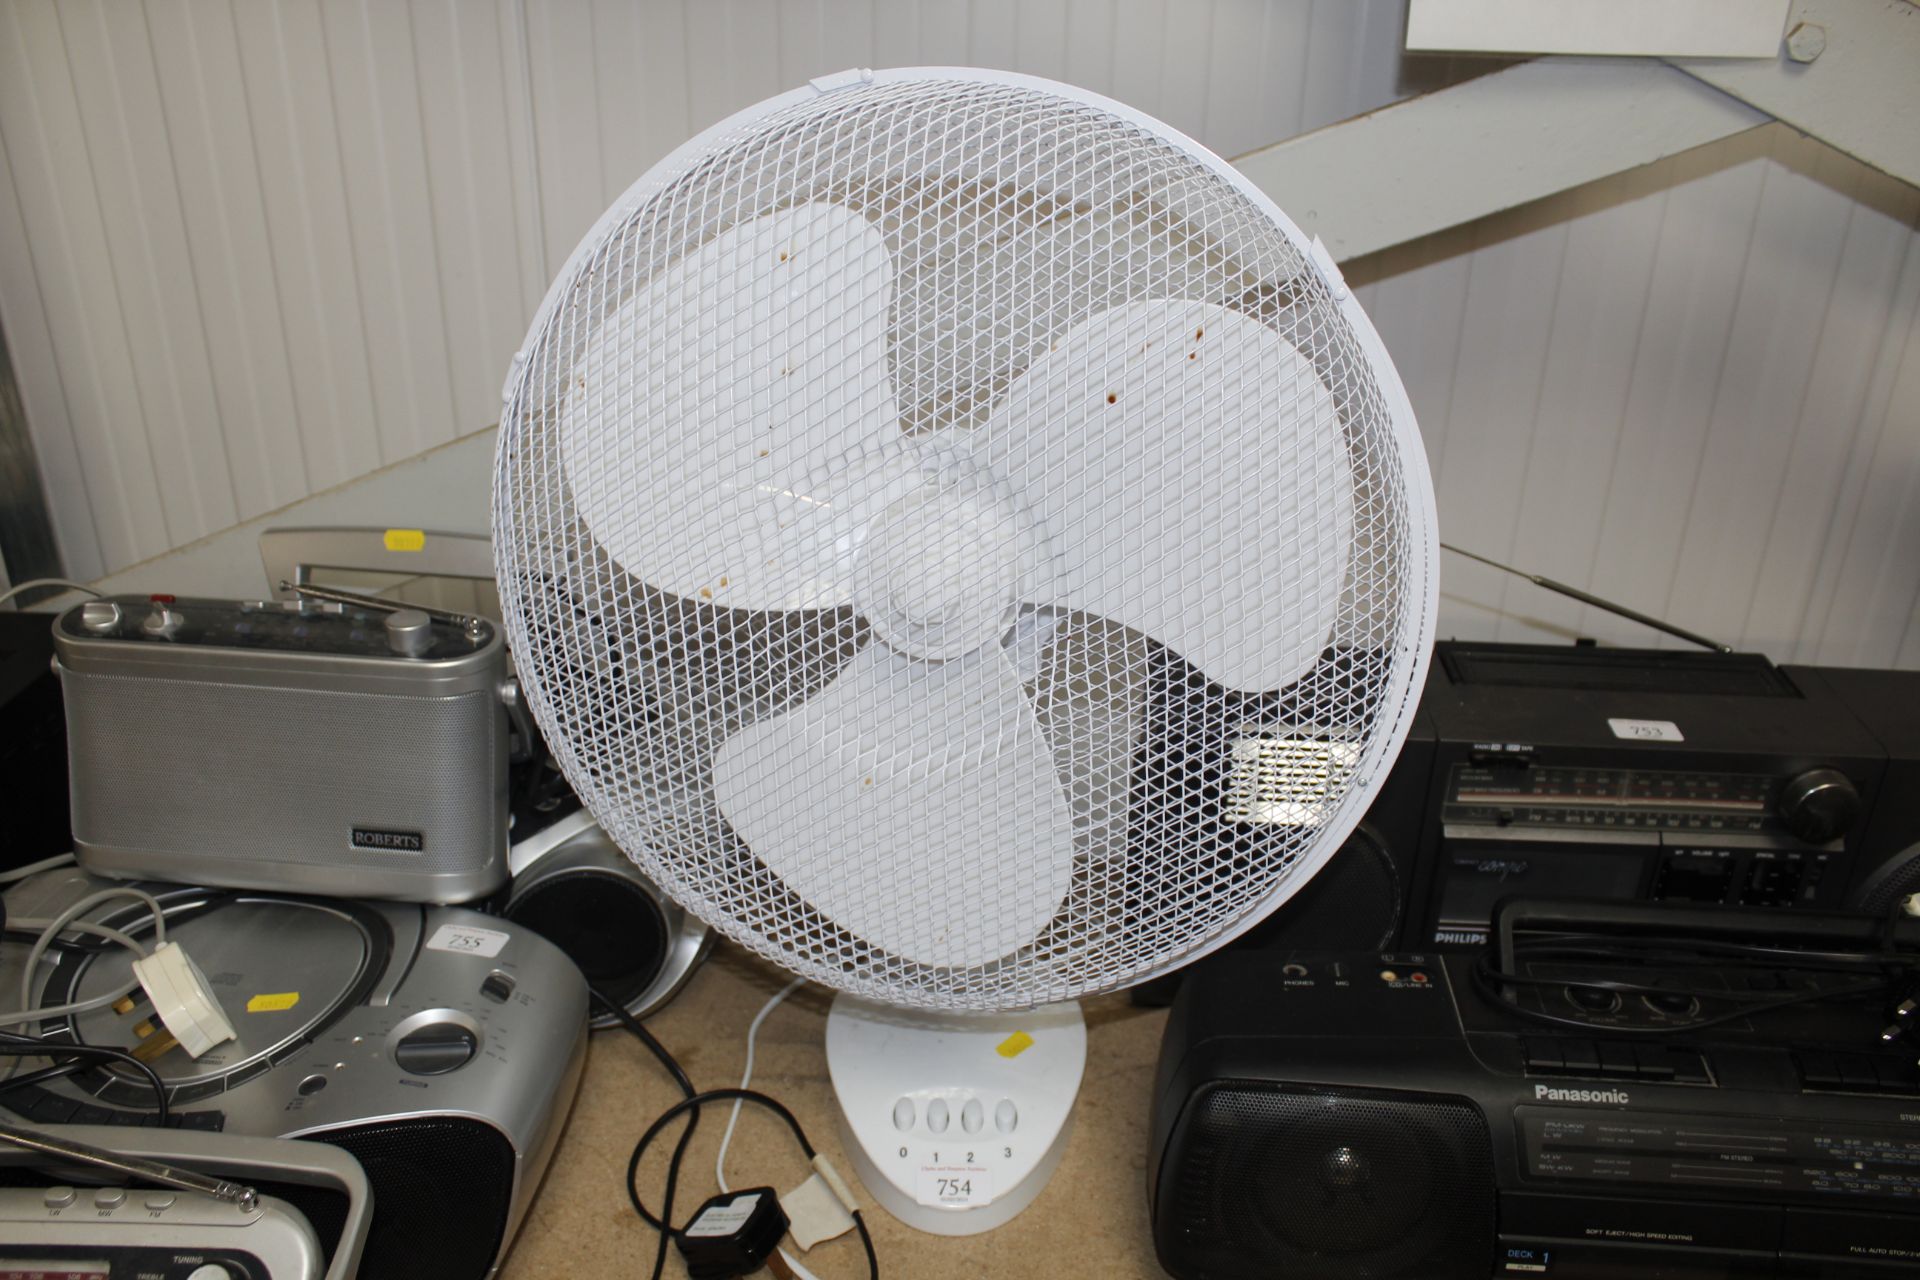 A desk fan